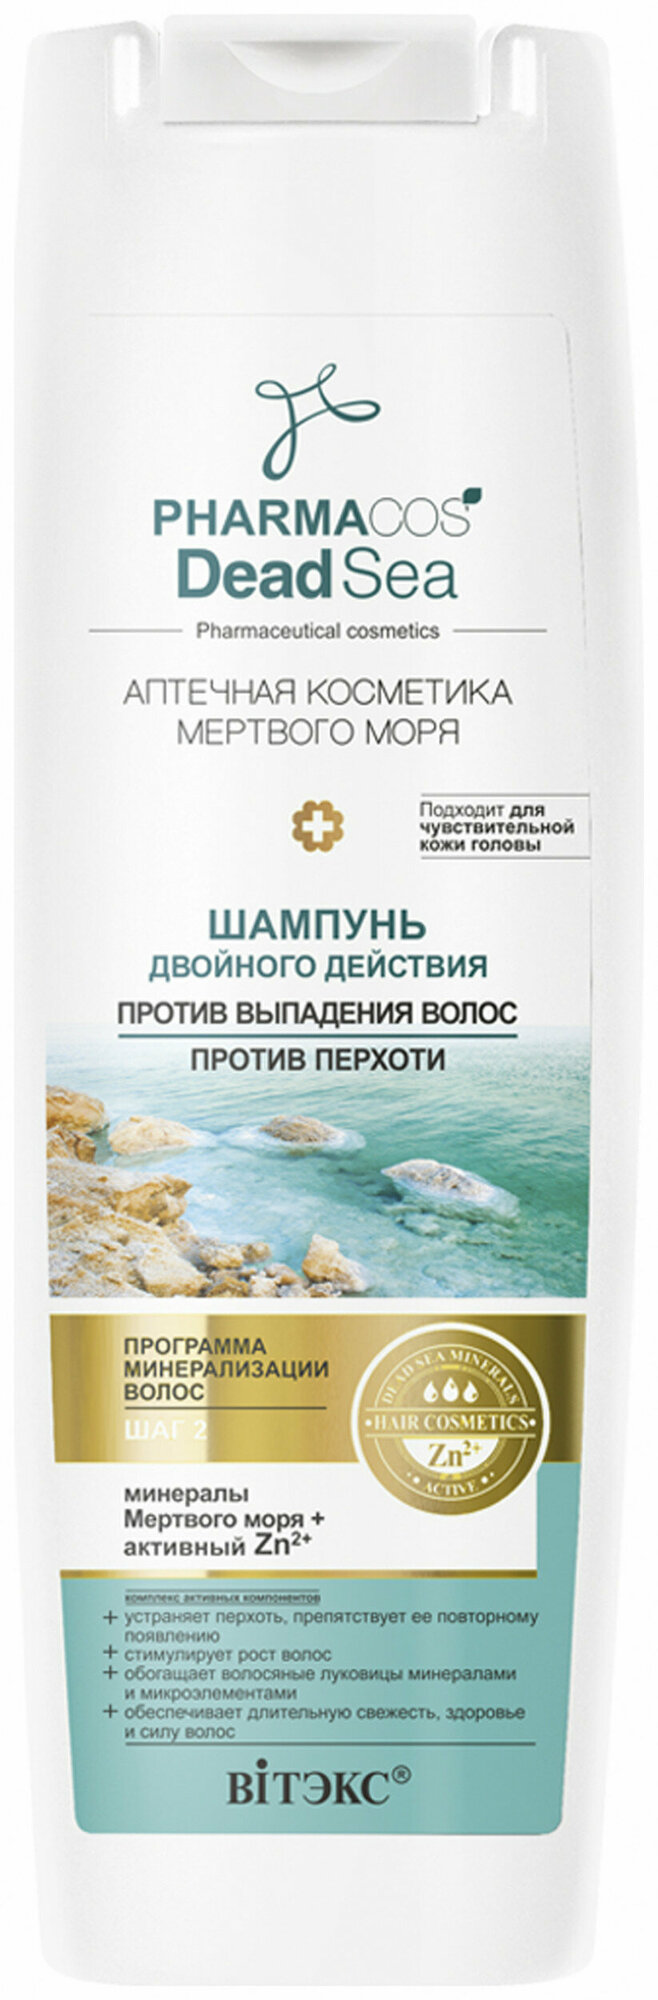 Шампунь для волос Белита Шампунь для волос двойного действия против перхоти - Белорусская косметика